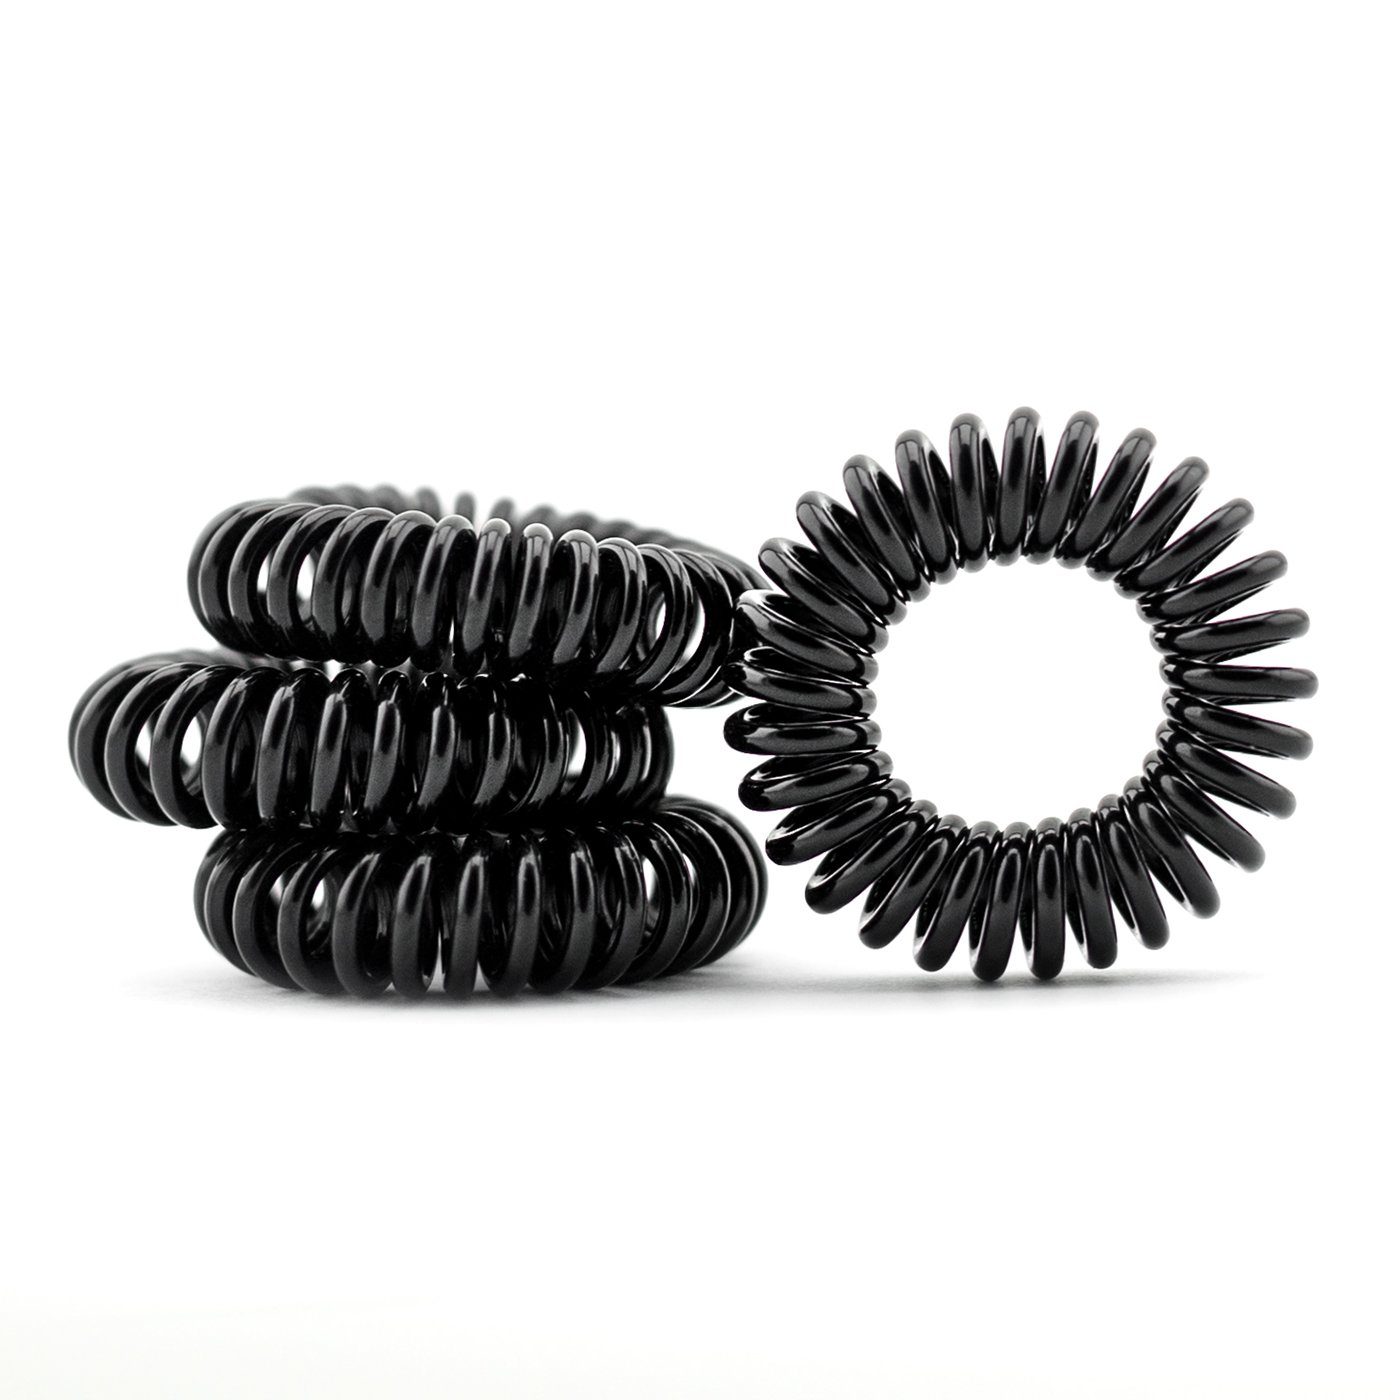 MyBeautyworld24 Spiral-Haargummi »Haargummi im Telefonkabel Design 4erSet  in schwarz« online kaufen | OTTO